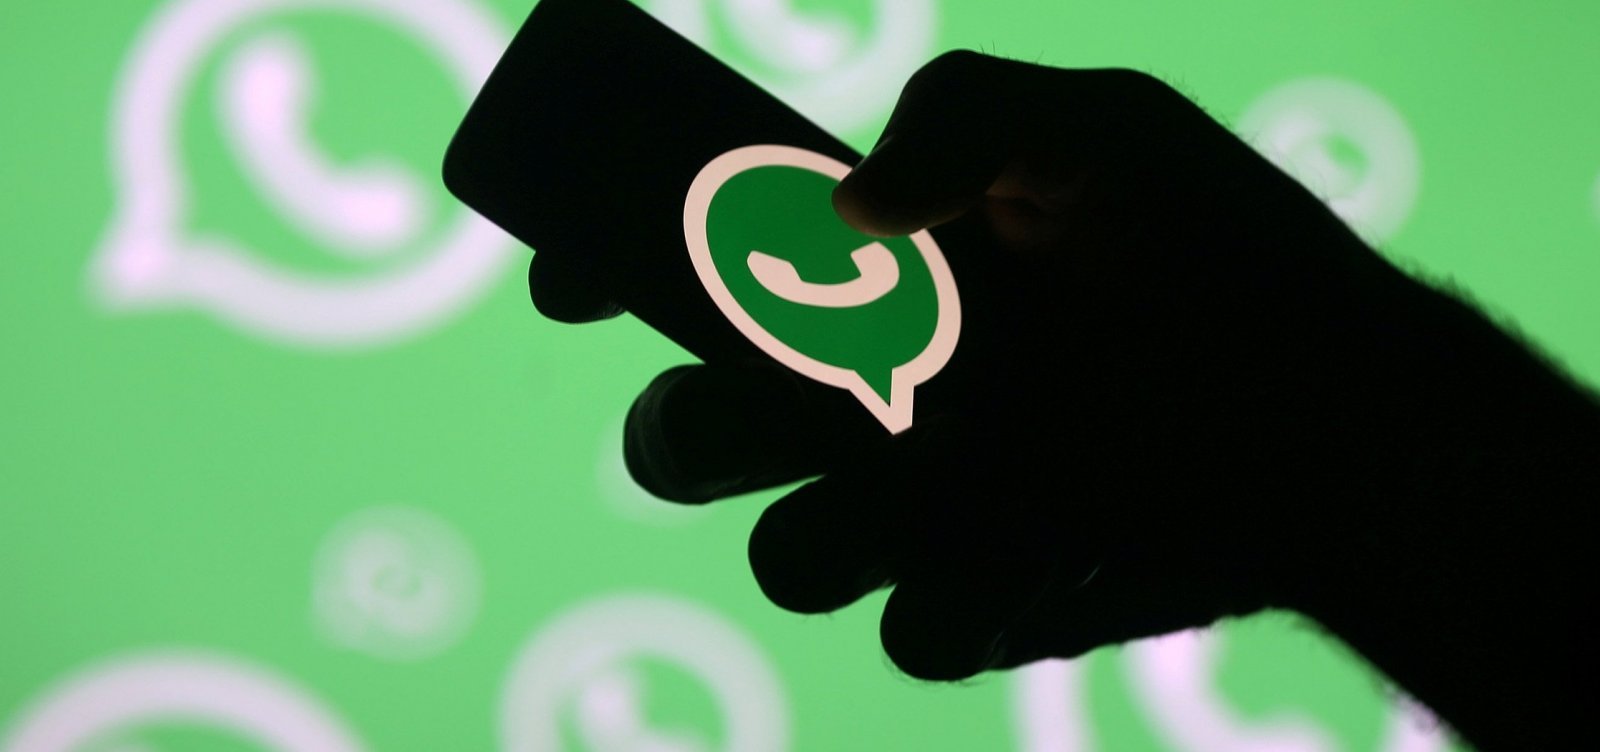 Projeto das fake news trará 'o fim das conversas particulares', afirma WhatsApp